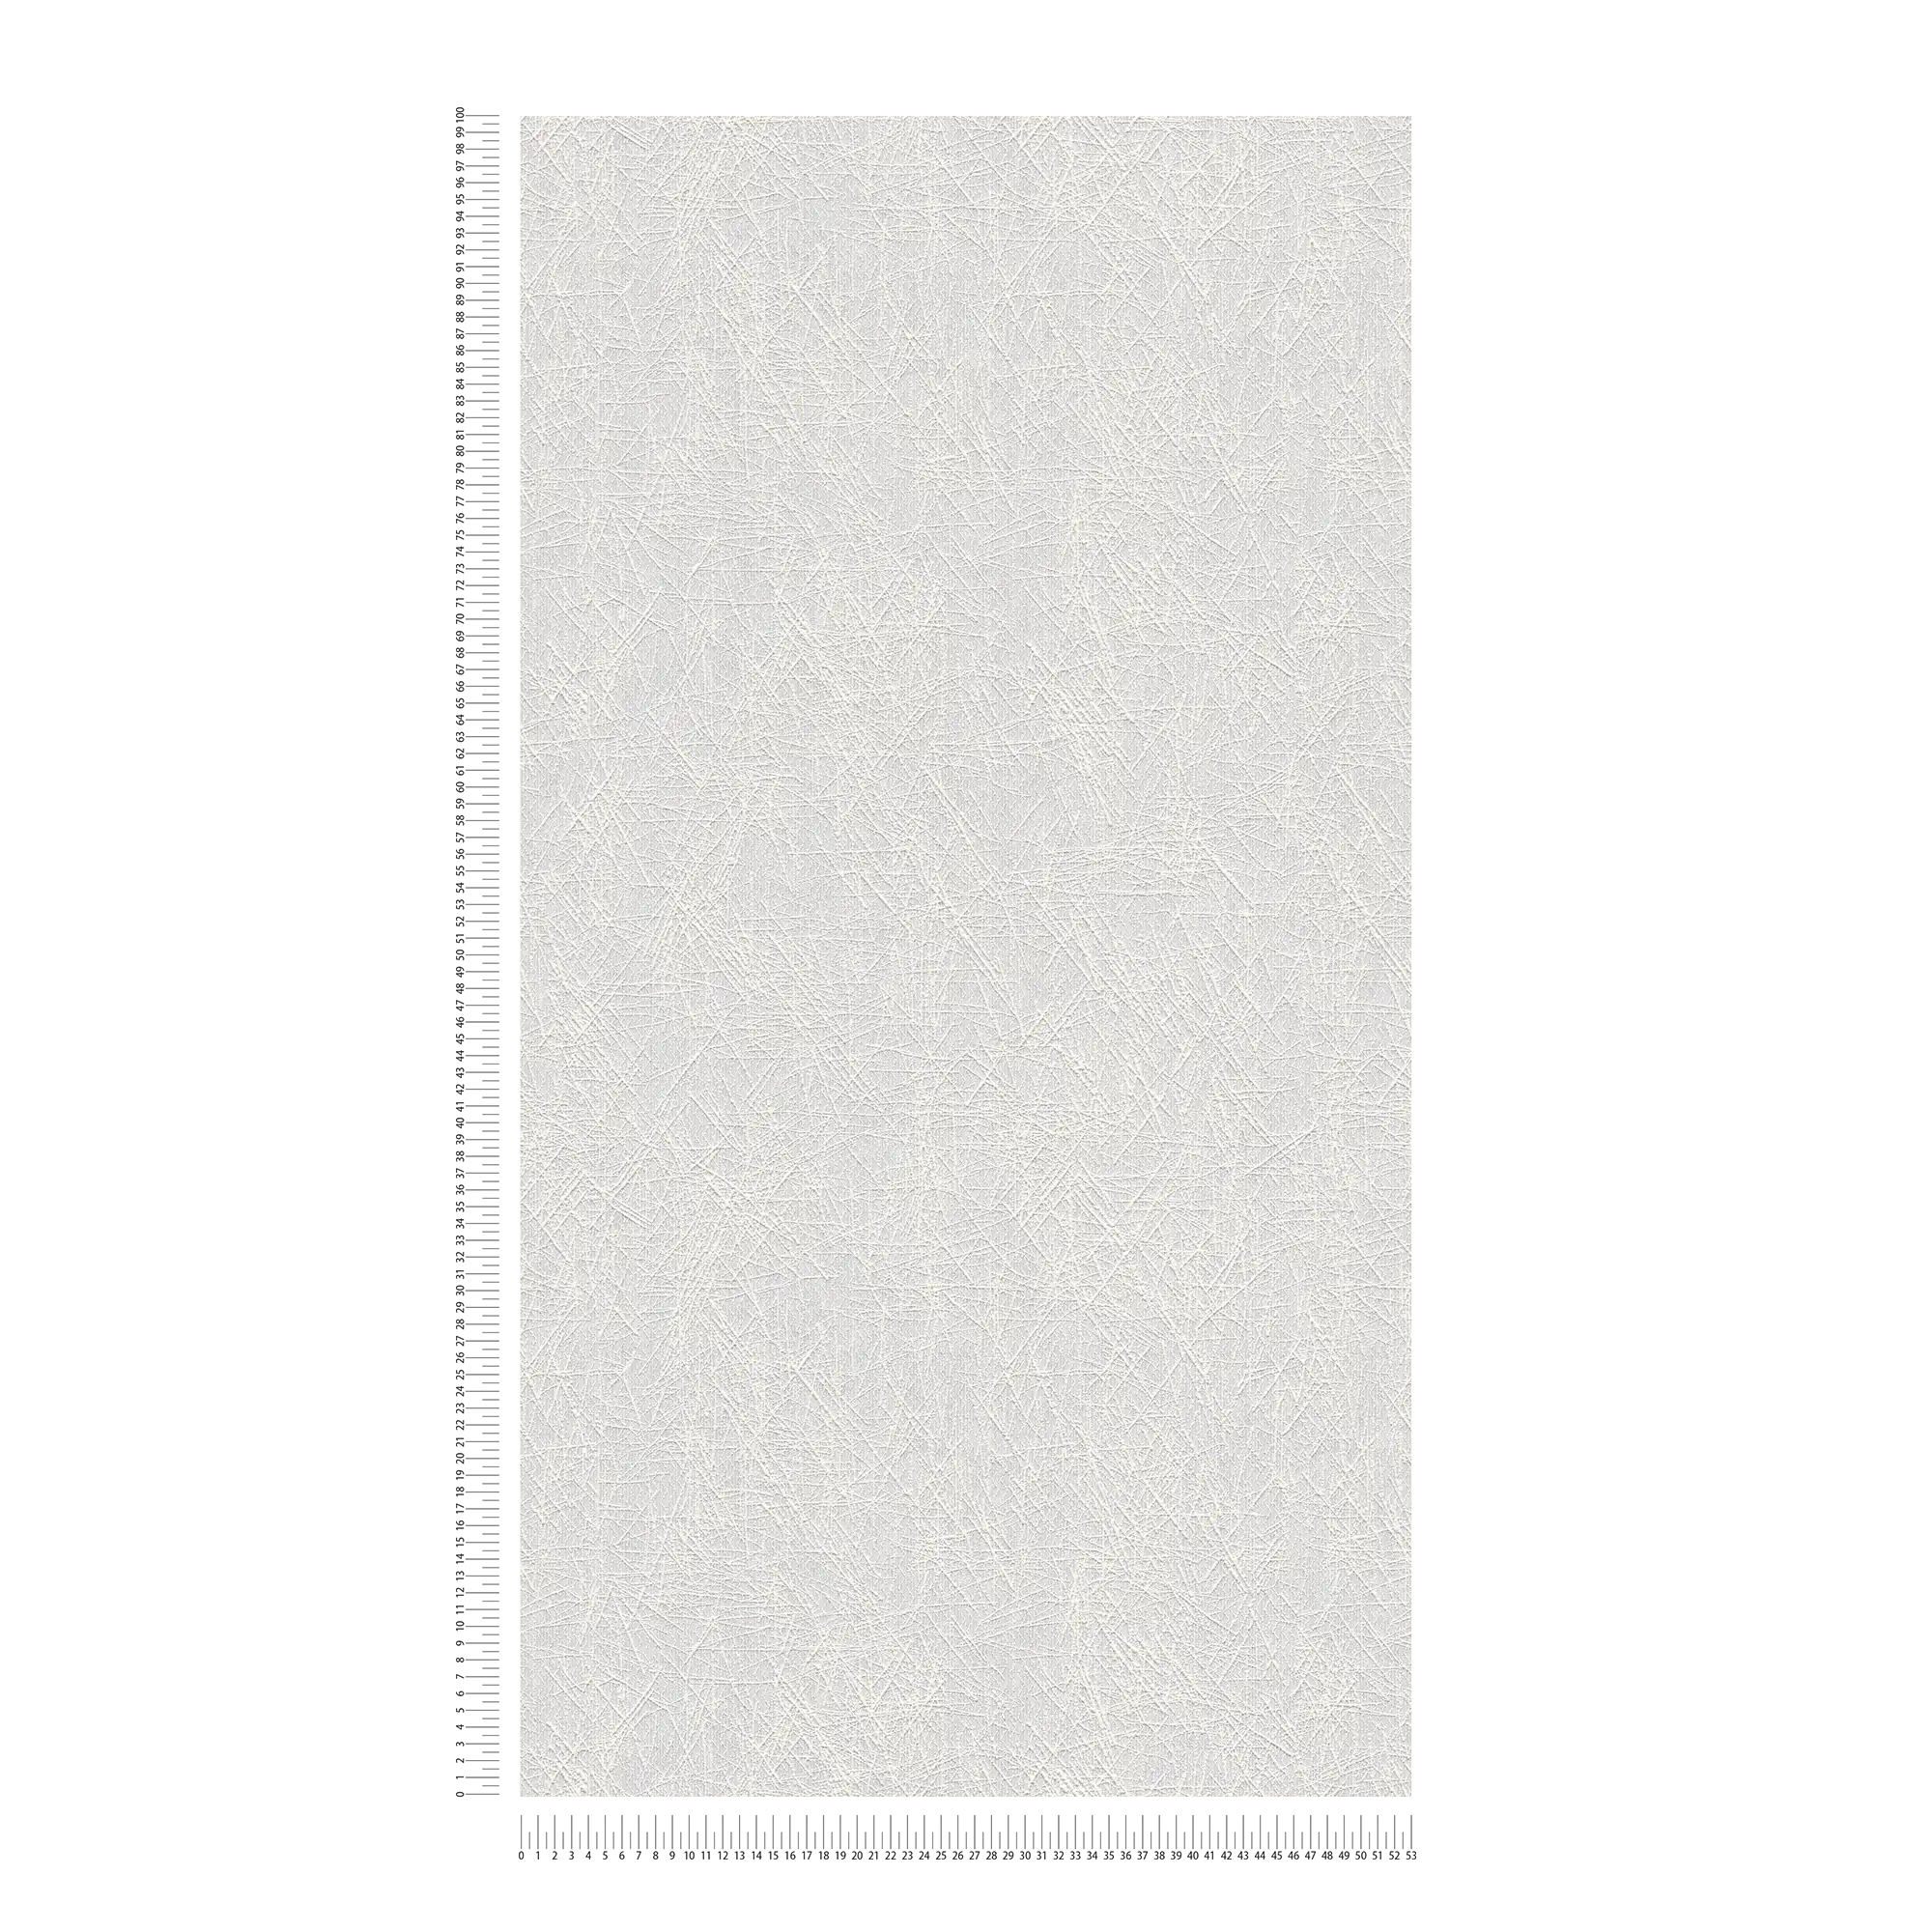             Papel pintado unitario con diseño gráfico de líneas - Pintable, Blanco
        